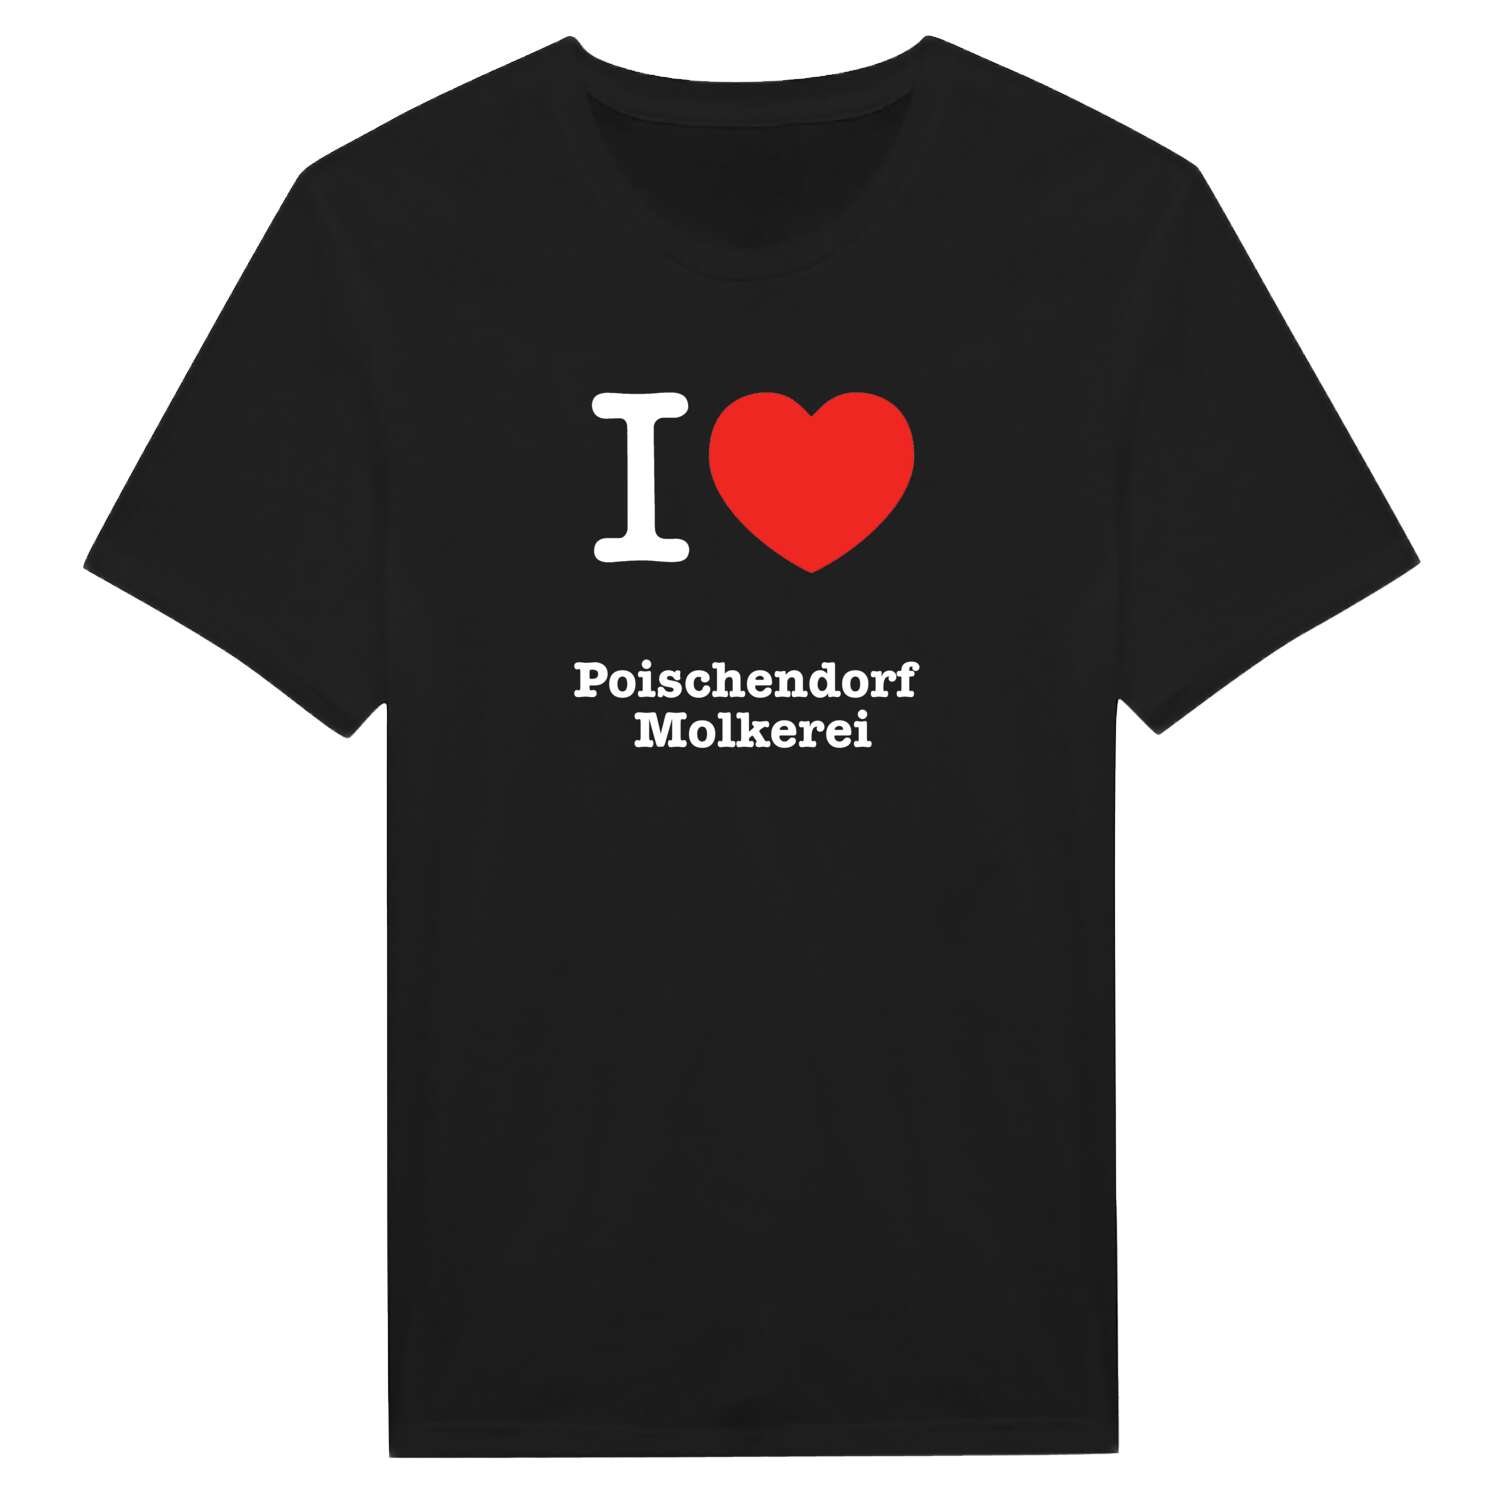 Poischendorf Molkerei T-Shirt »I love«